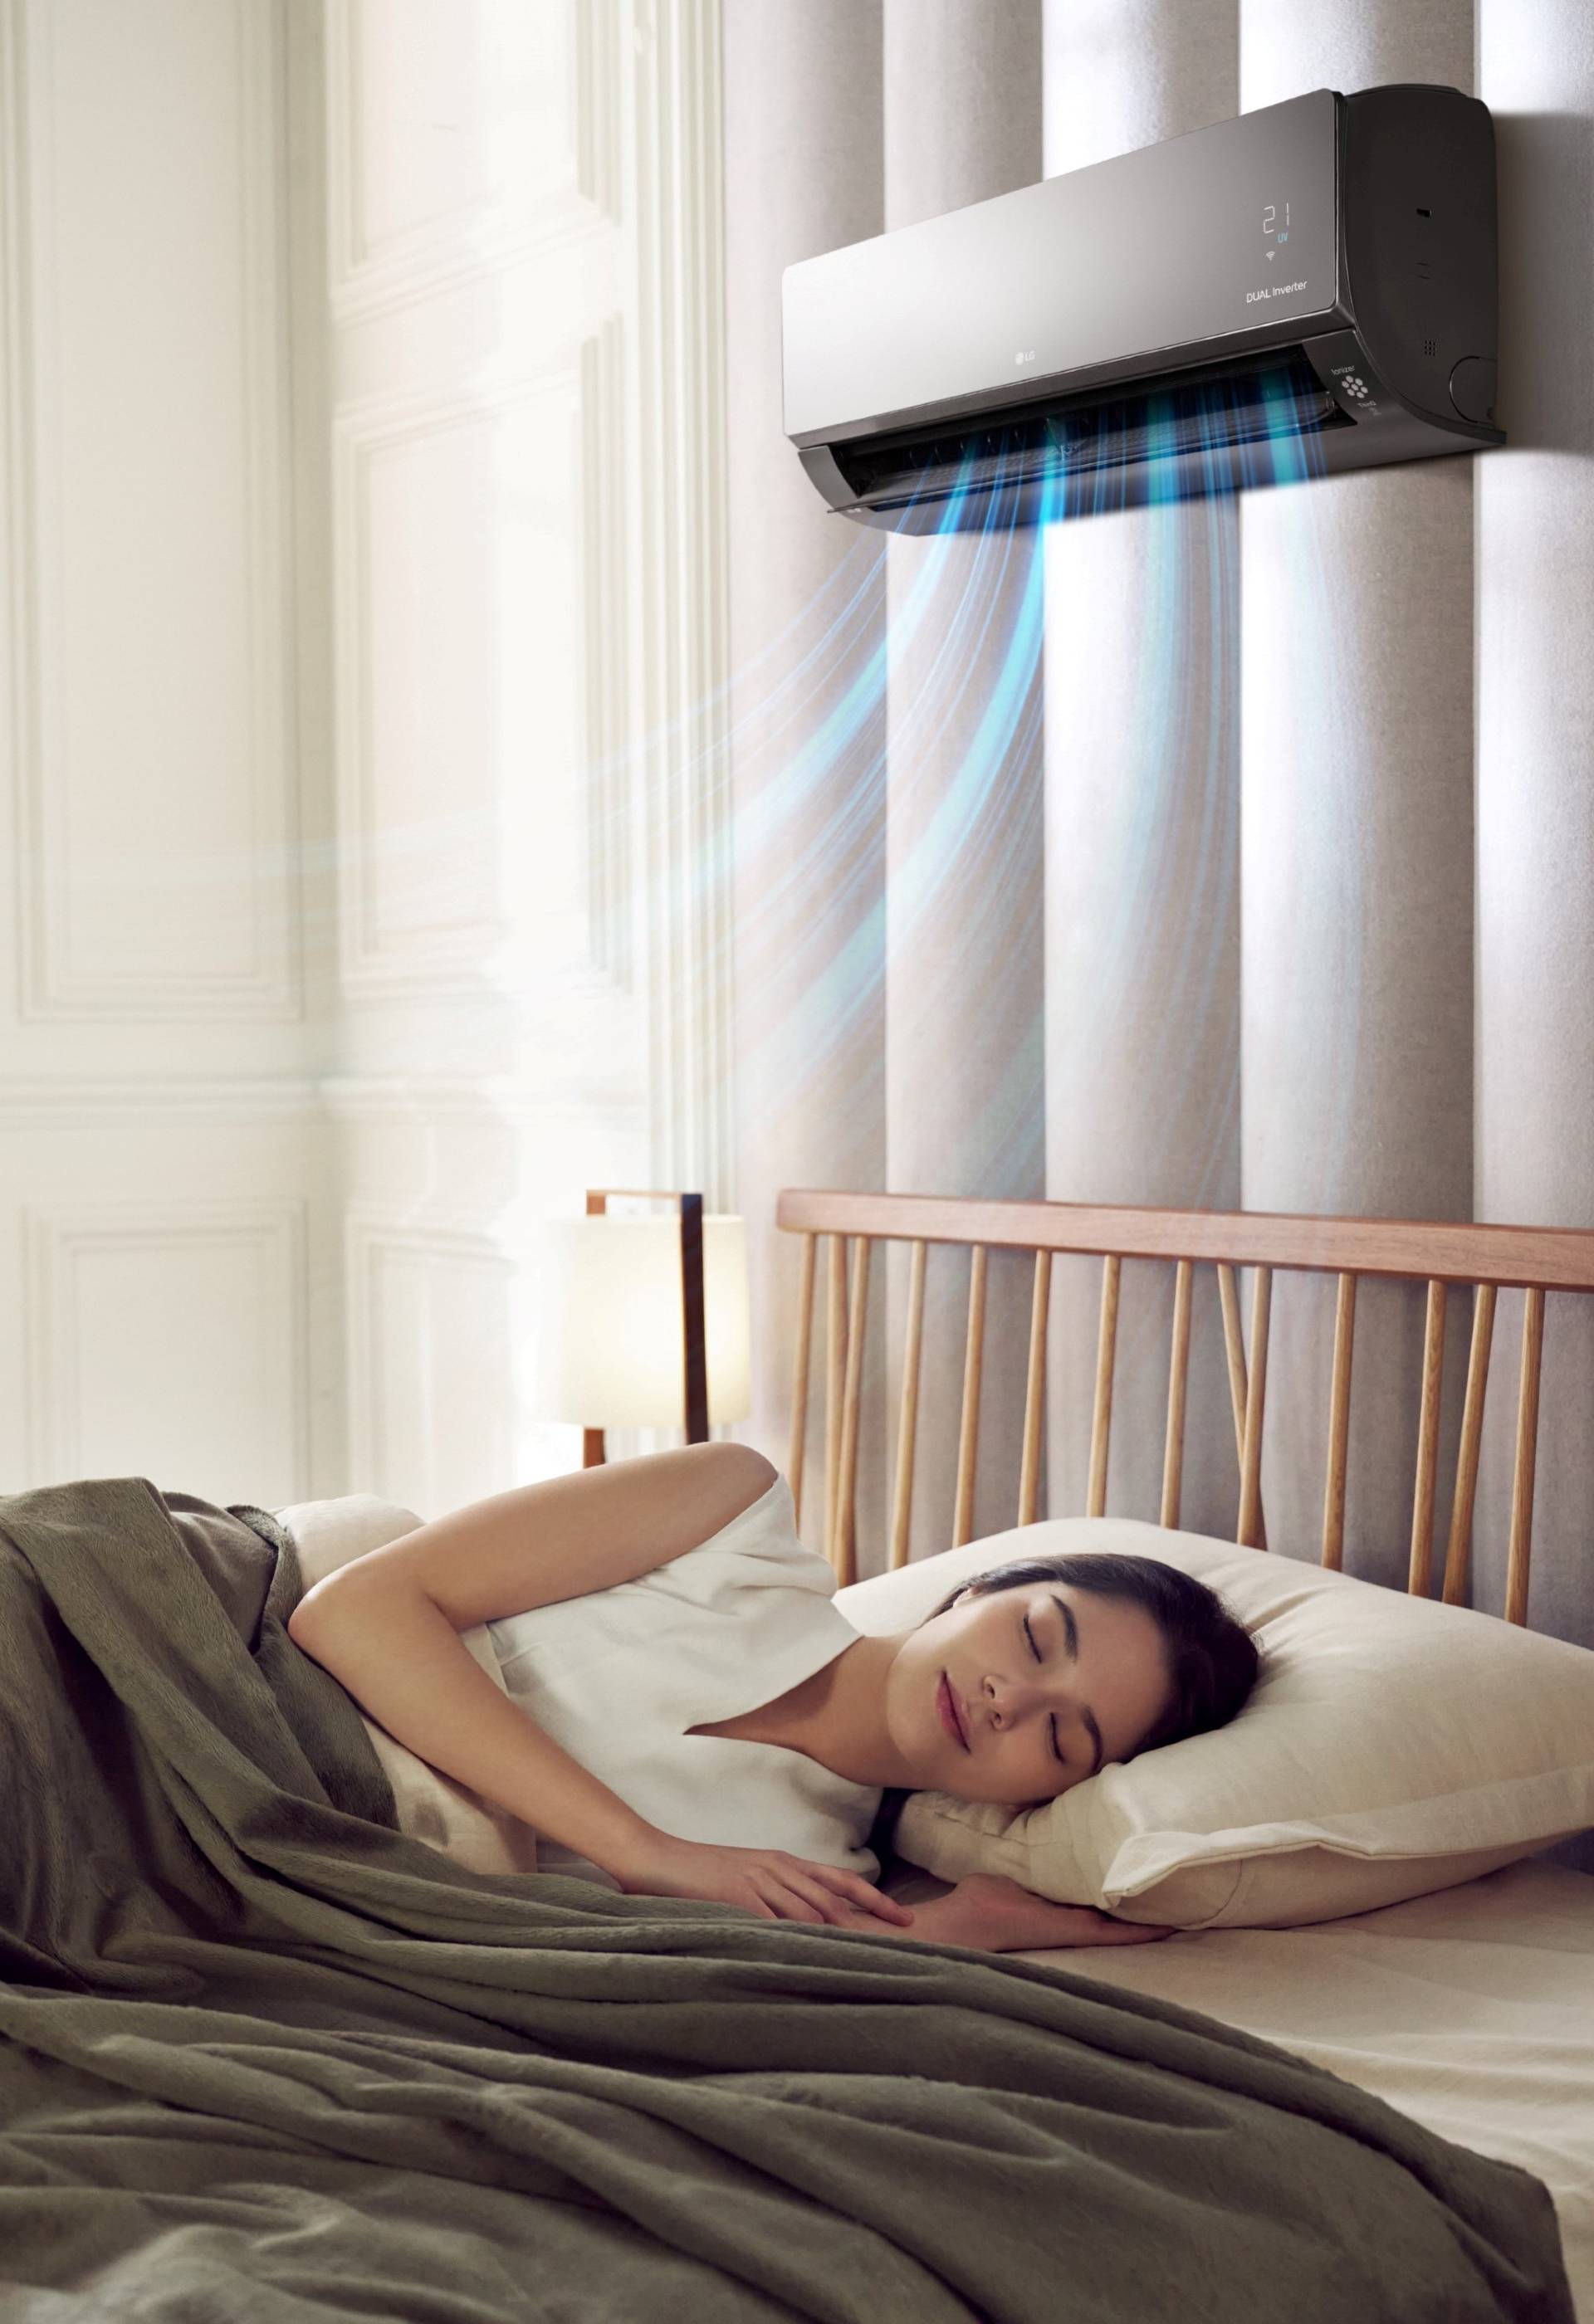 Osim što unose svježinu u dom, novi LG-evi klima-uređaji brinu i o zdravlju